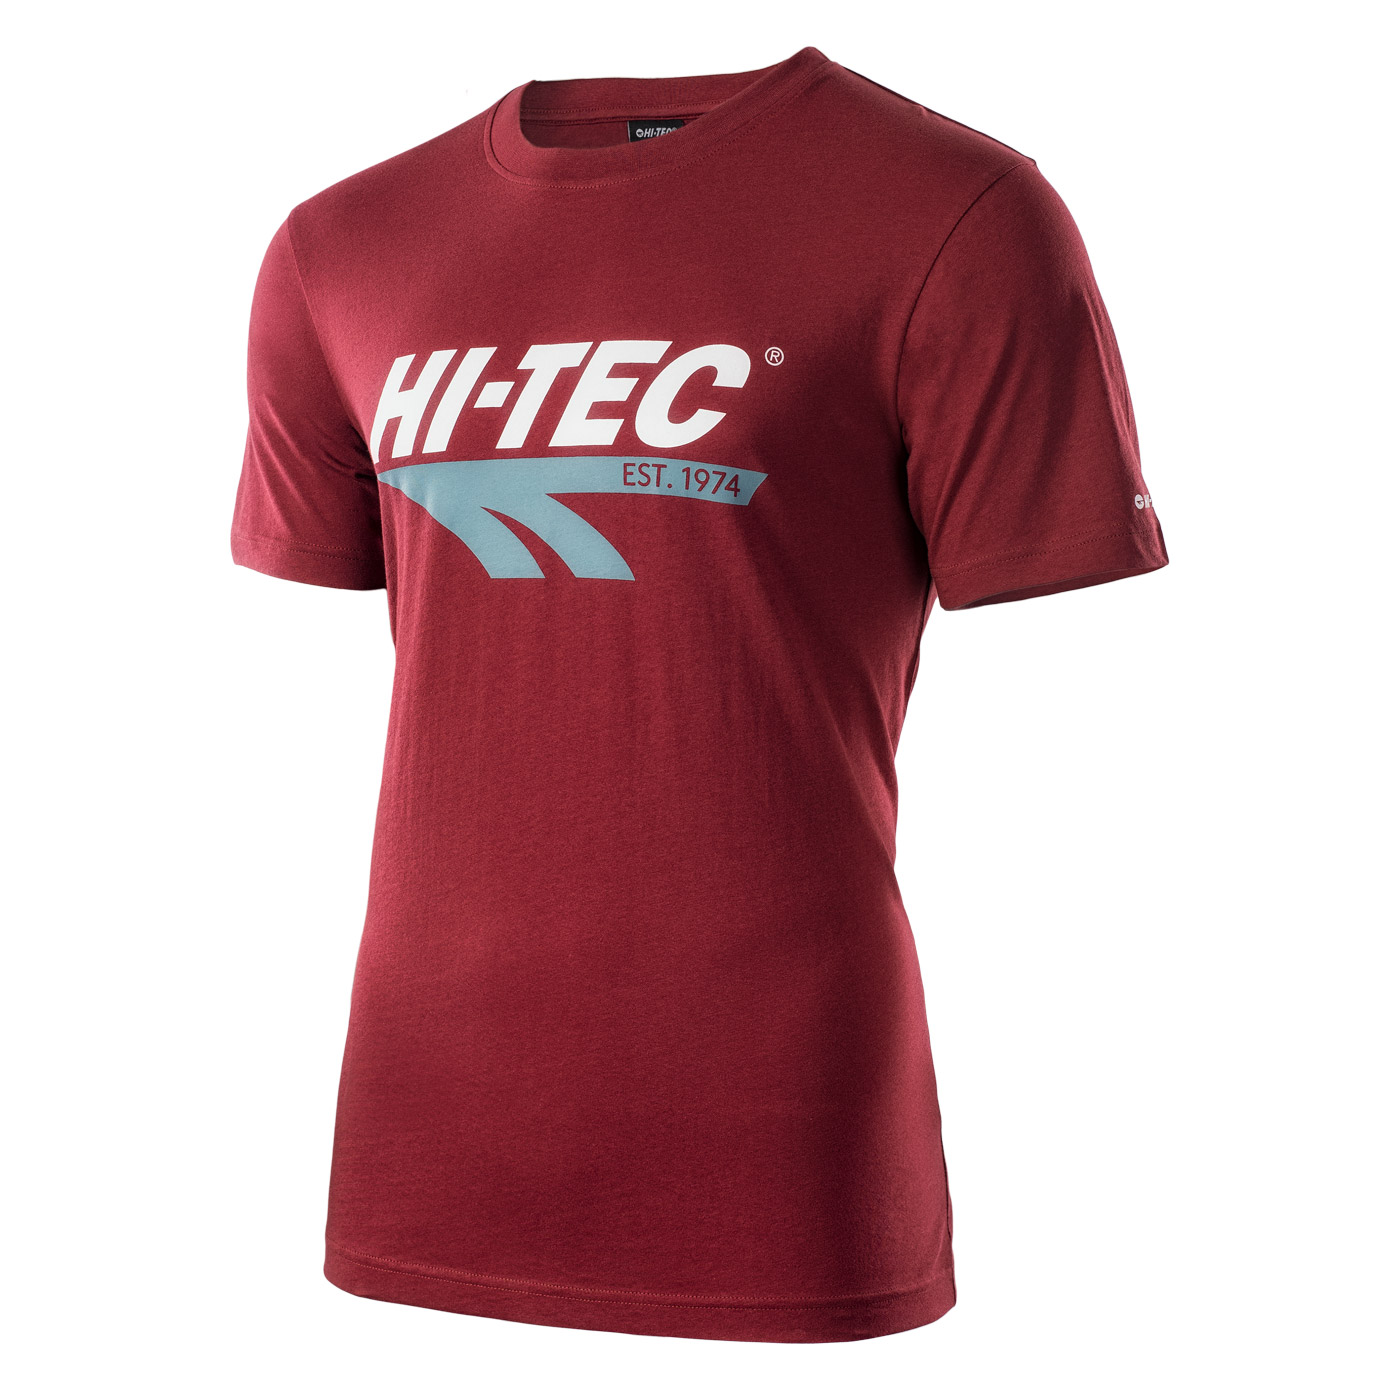 HI-TEC Retro - pánské retro tričko (červené) Barva: Červená (Pomegranate), Velikost: M